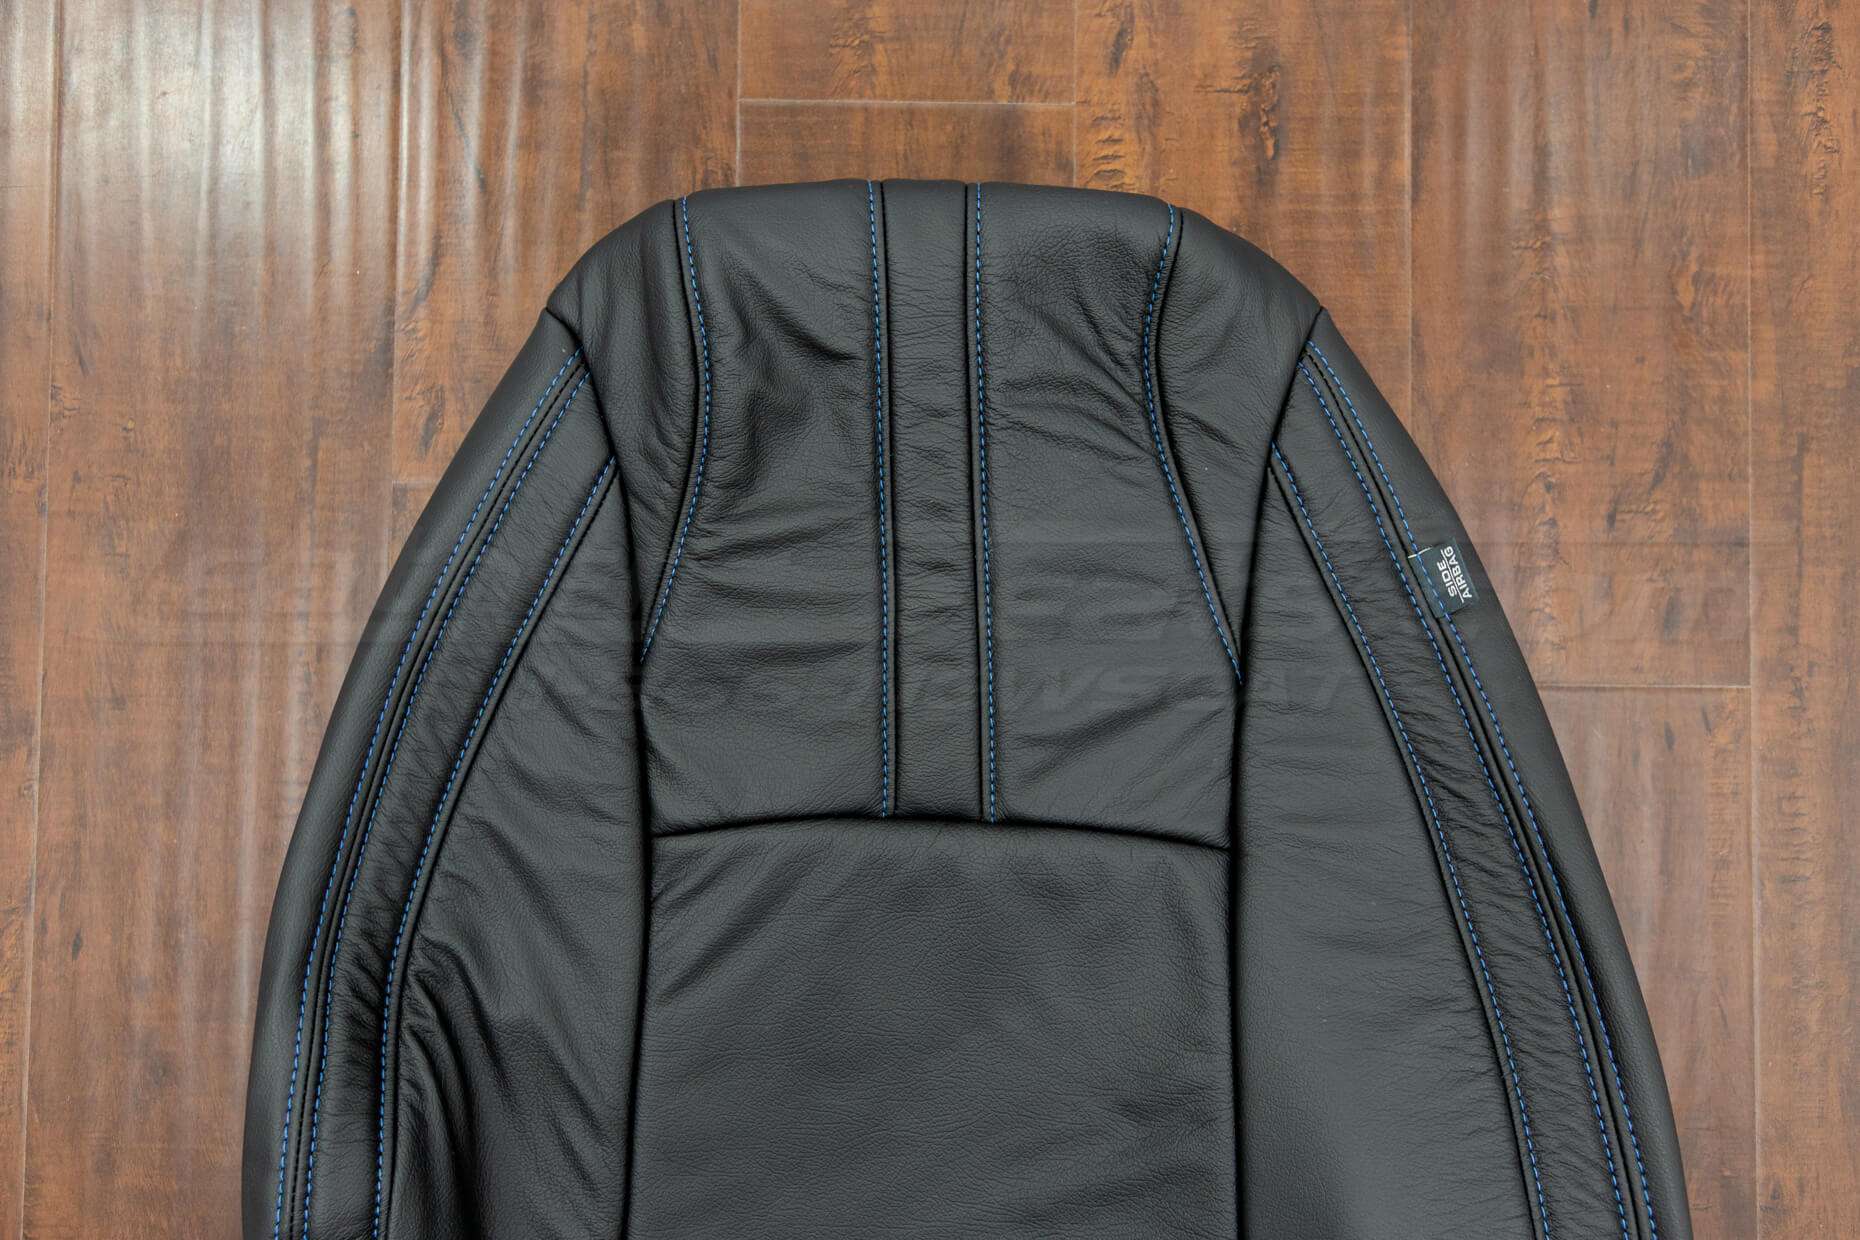 2017-2019 Honda Civic Upholstery Kit - Black - Front backrest upper section